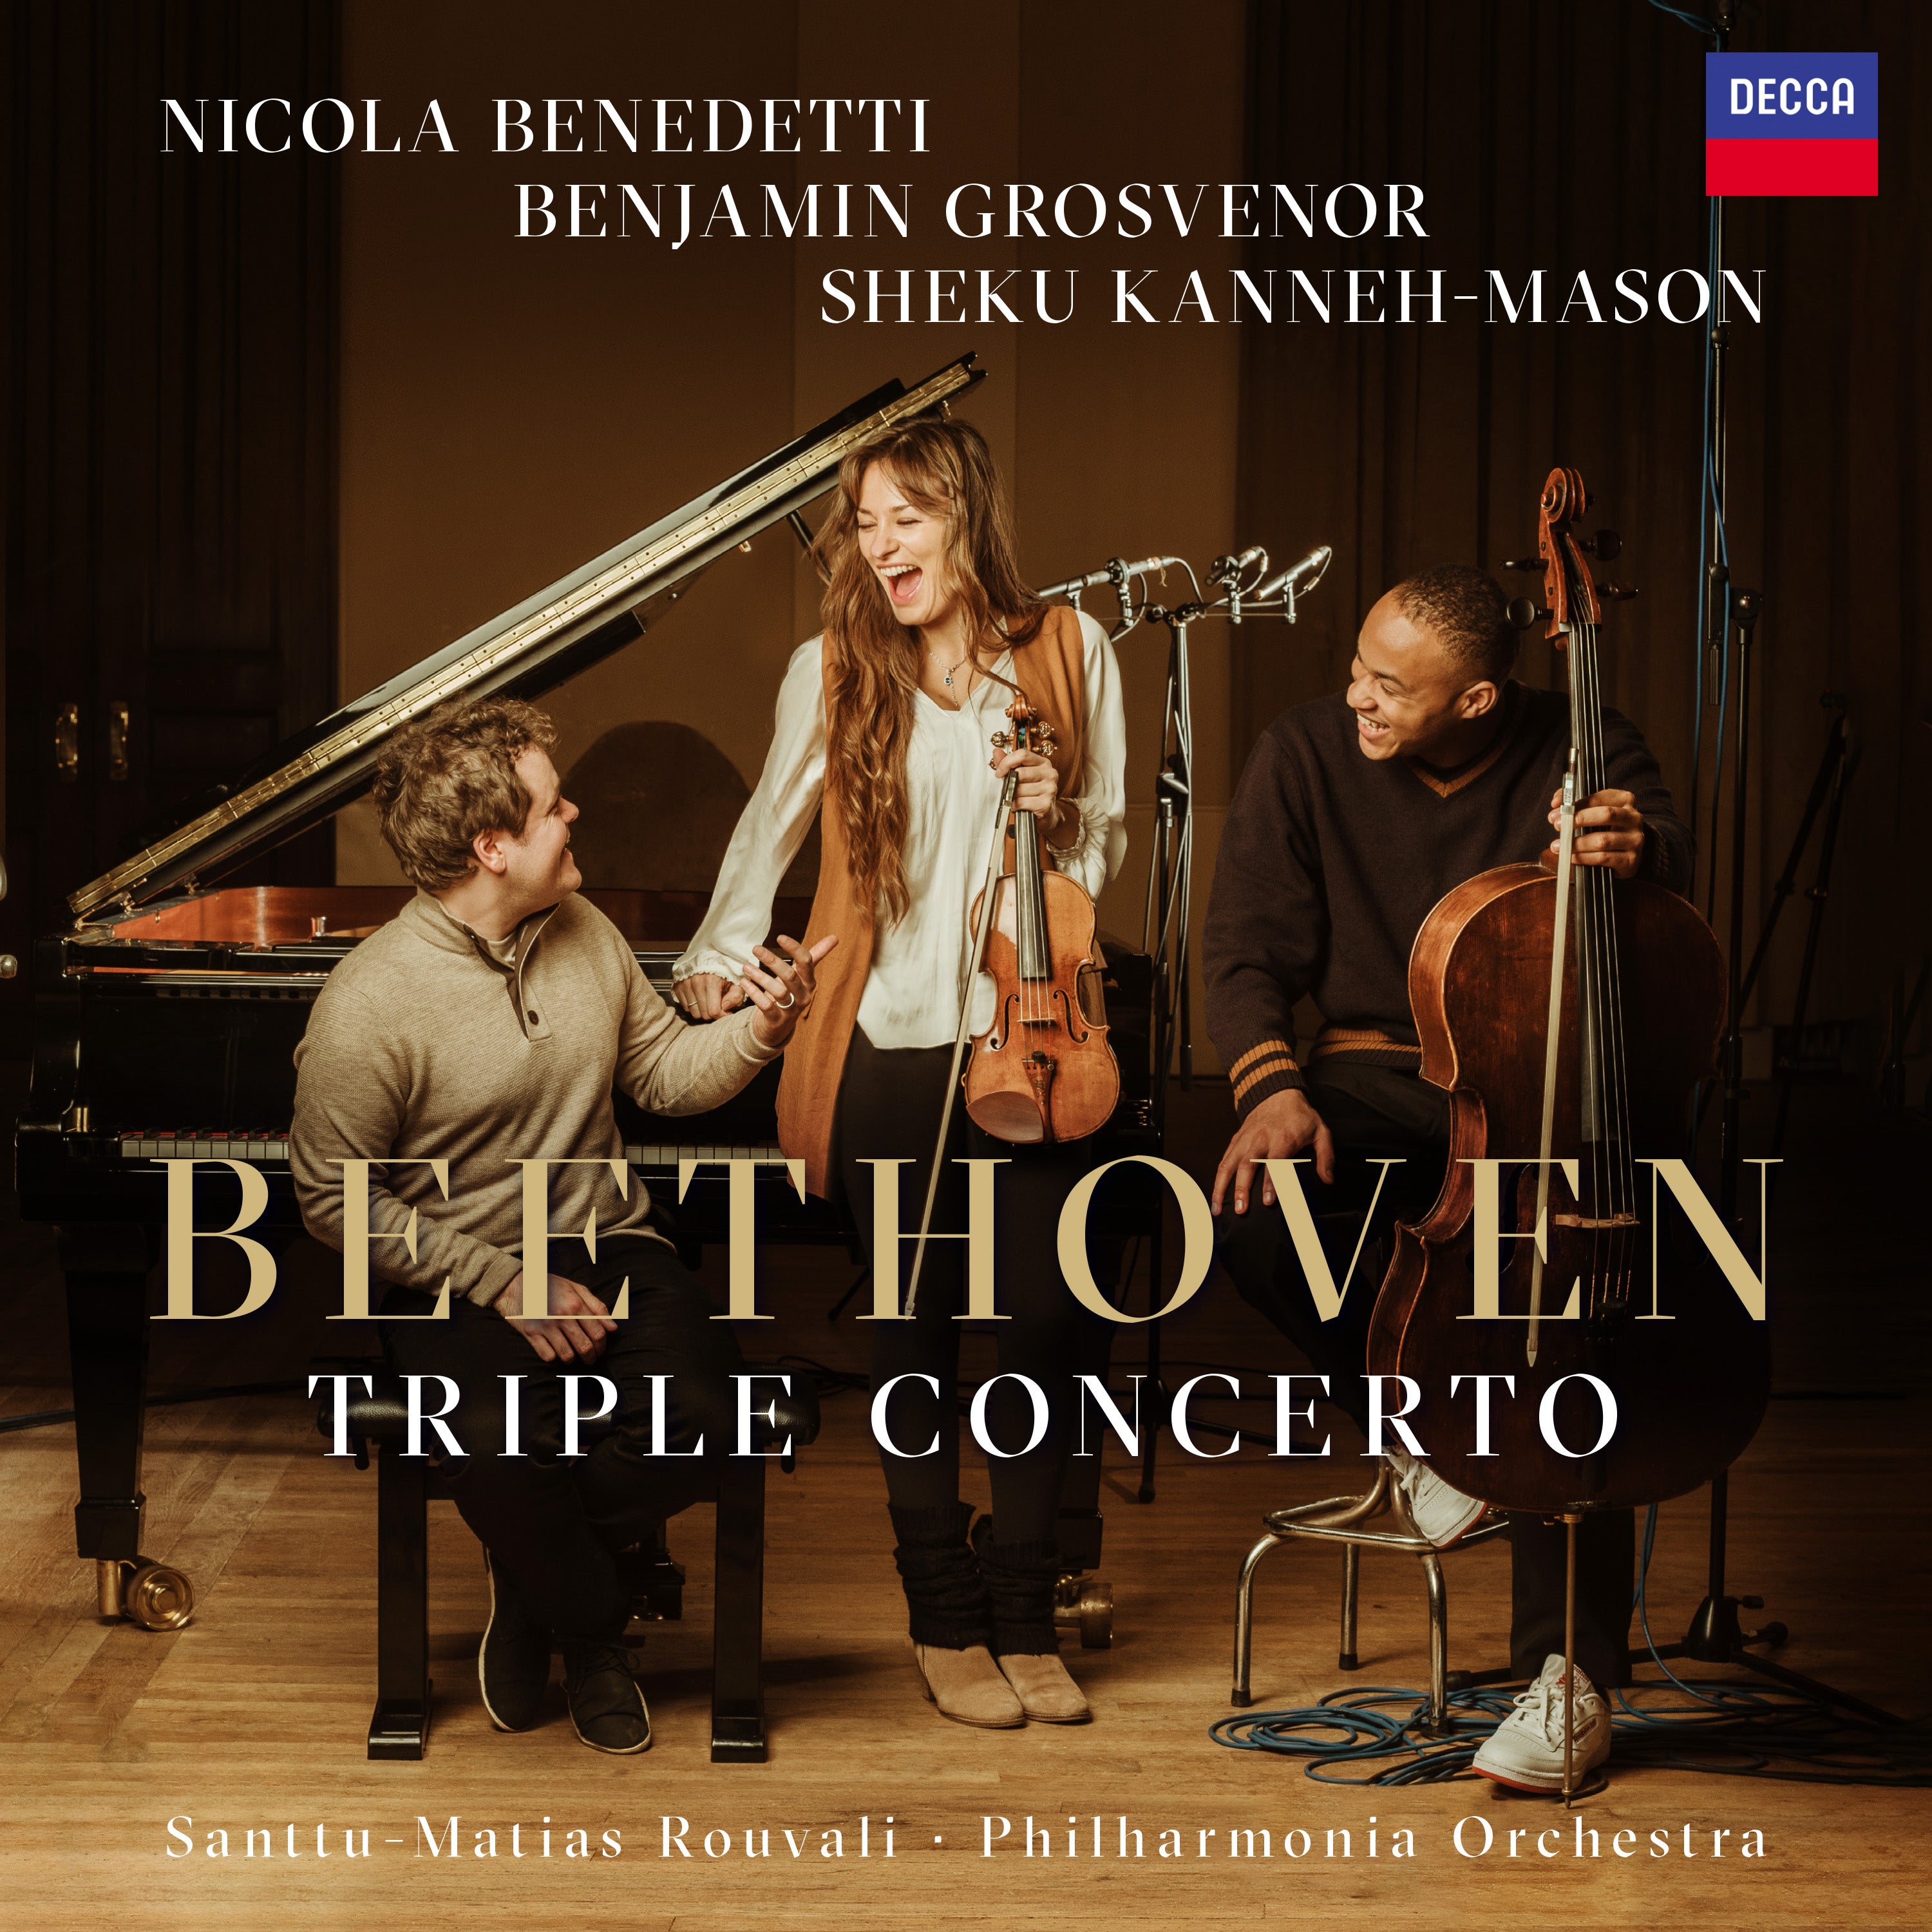 Sheku Kanneh-Mason, Nicola Benedetti, Benjamin Grosvenor - Beethoven - Triple Concerto: Vinyl LP